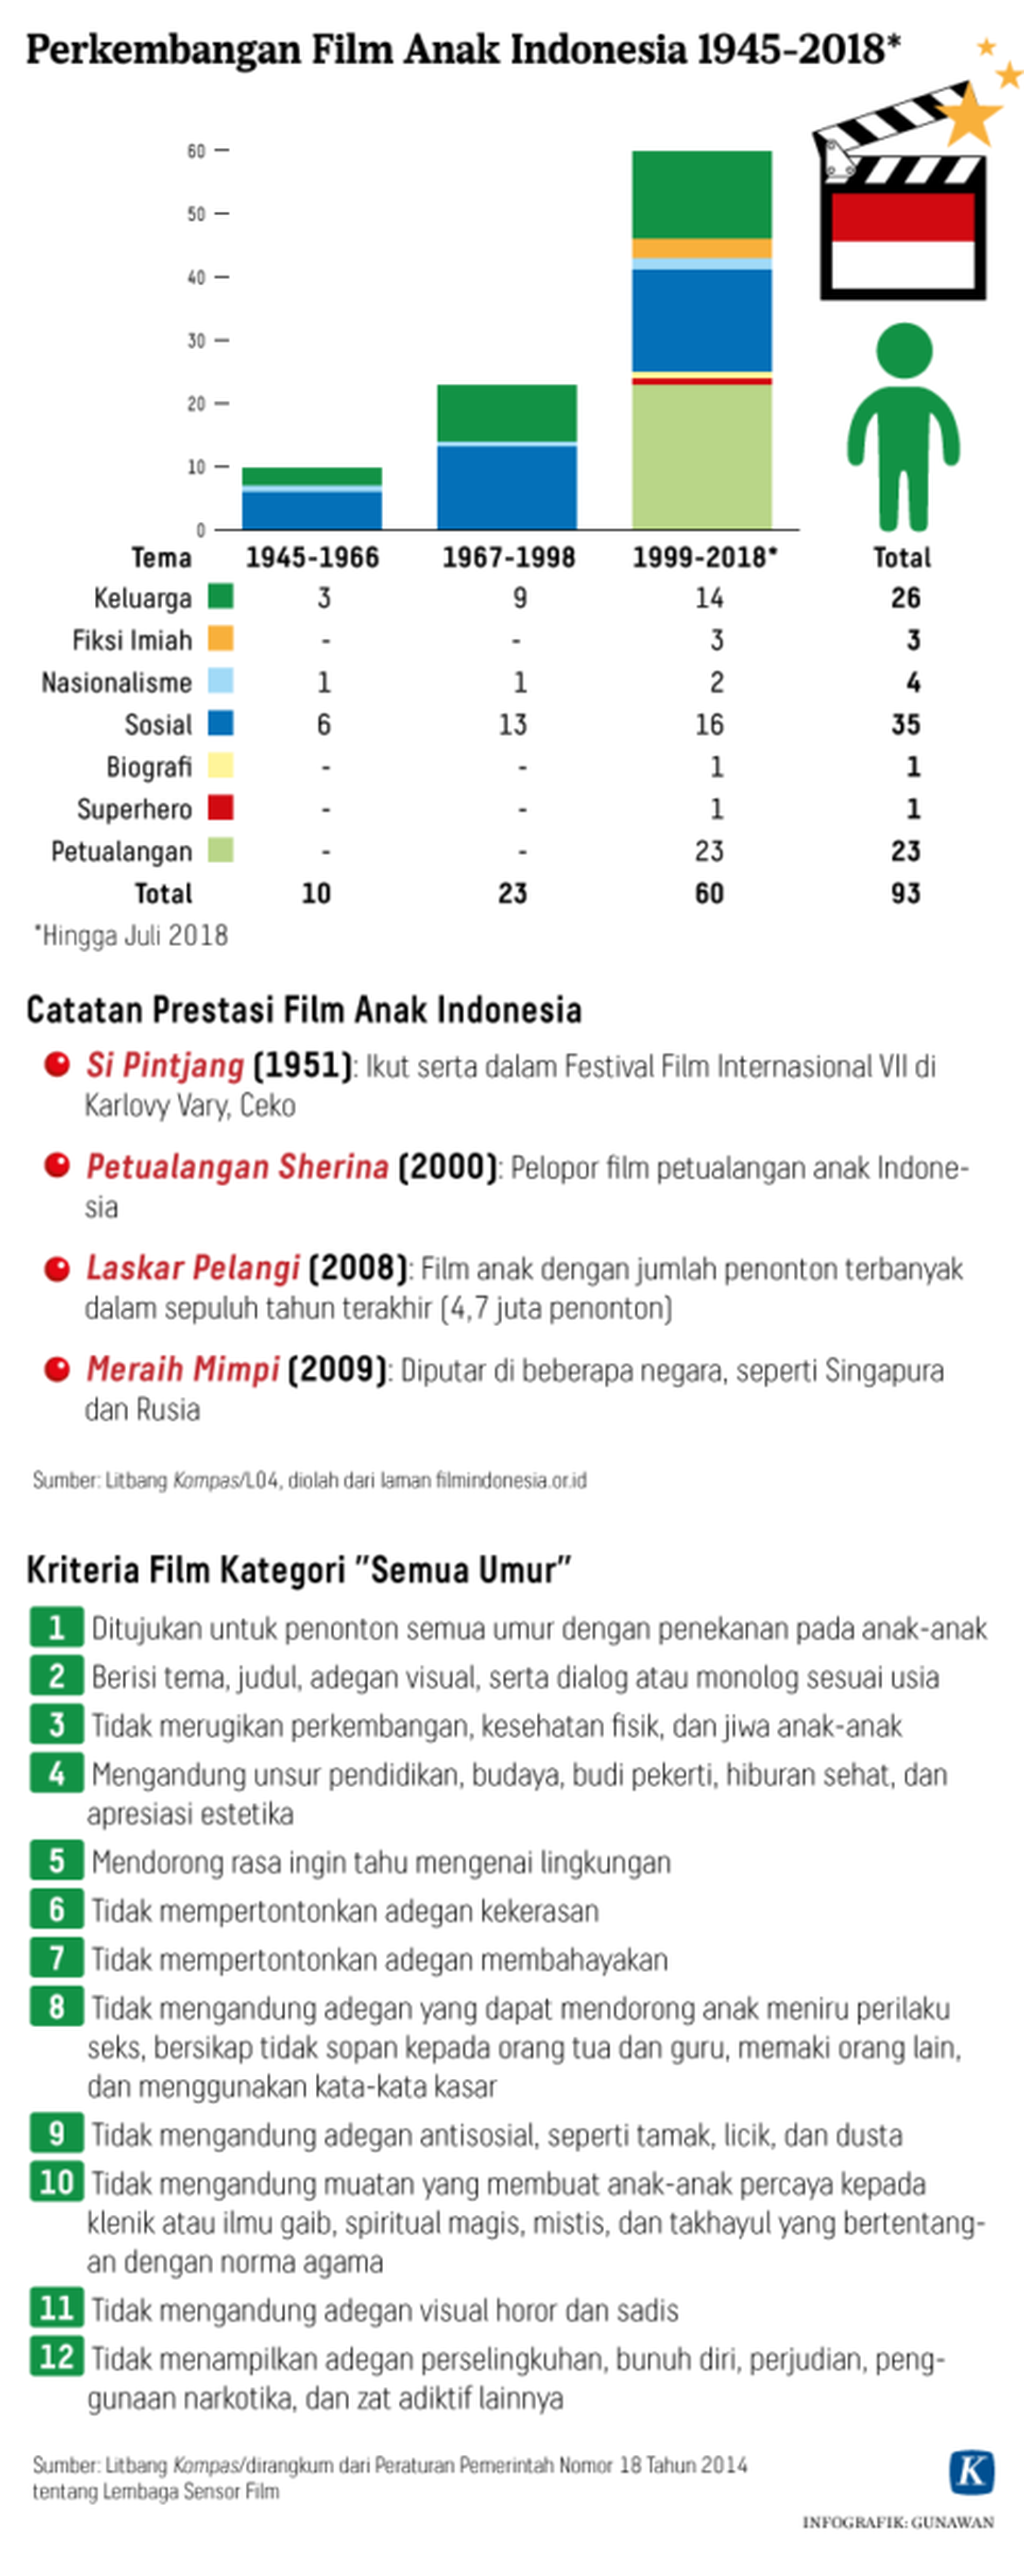 https://cdn-assetd.kompas.id/5y-1SEfo8ekuHCCqgWxh-CcBSpI=/1024x2549/https%3A%2F%2Fkompas.id%2Fwp-content%2Fuploads%2F2018%2F08%2F20180824_GKT_Grafis-Metamorfosis-Film-Anak-Indonesia-Kompas-ID-Mumed-W.png